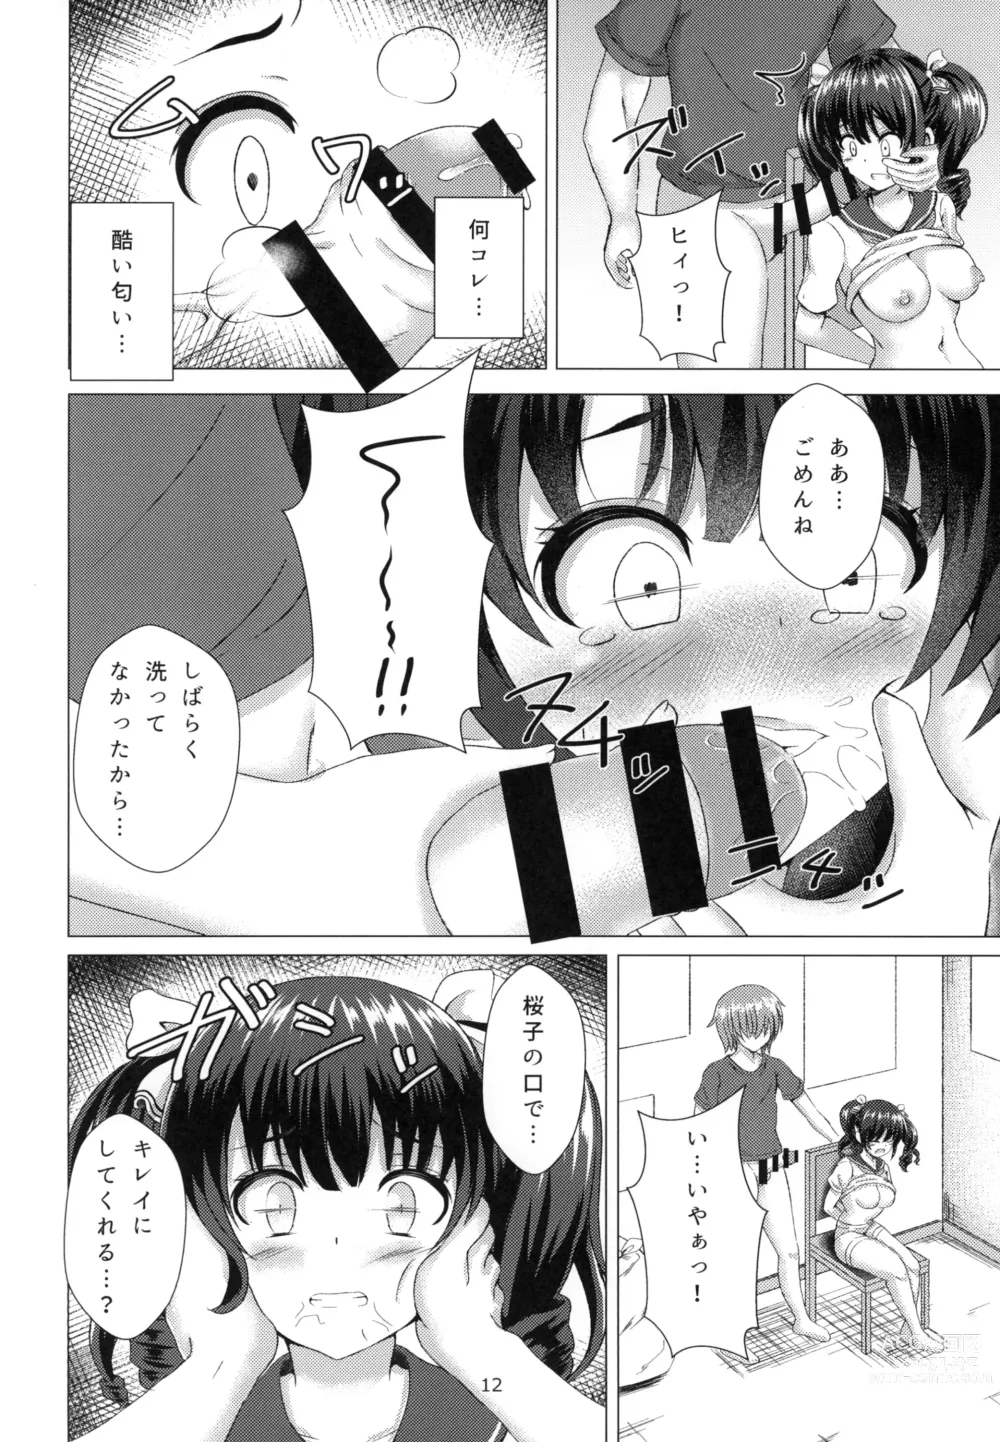 Page 12 of doujinshi Yuganda Koigokoro